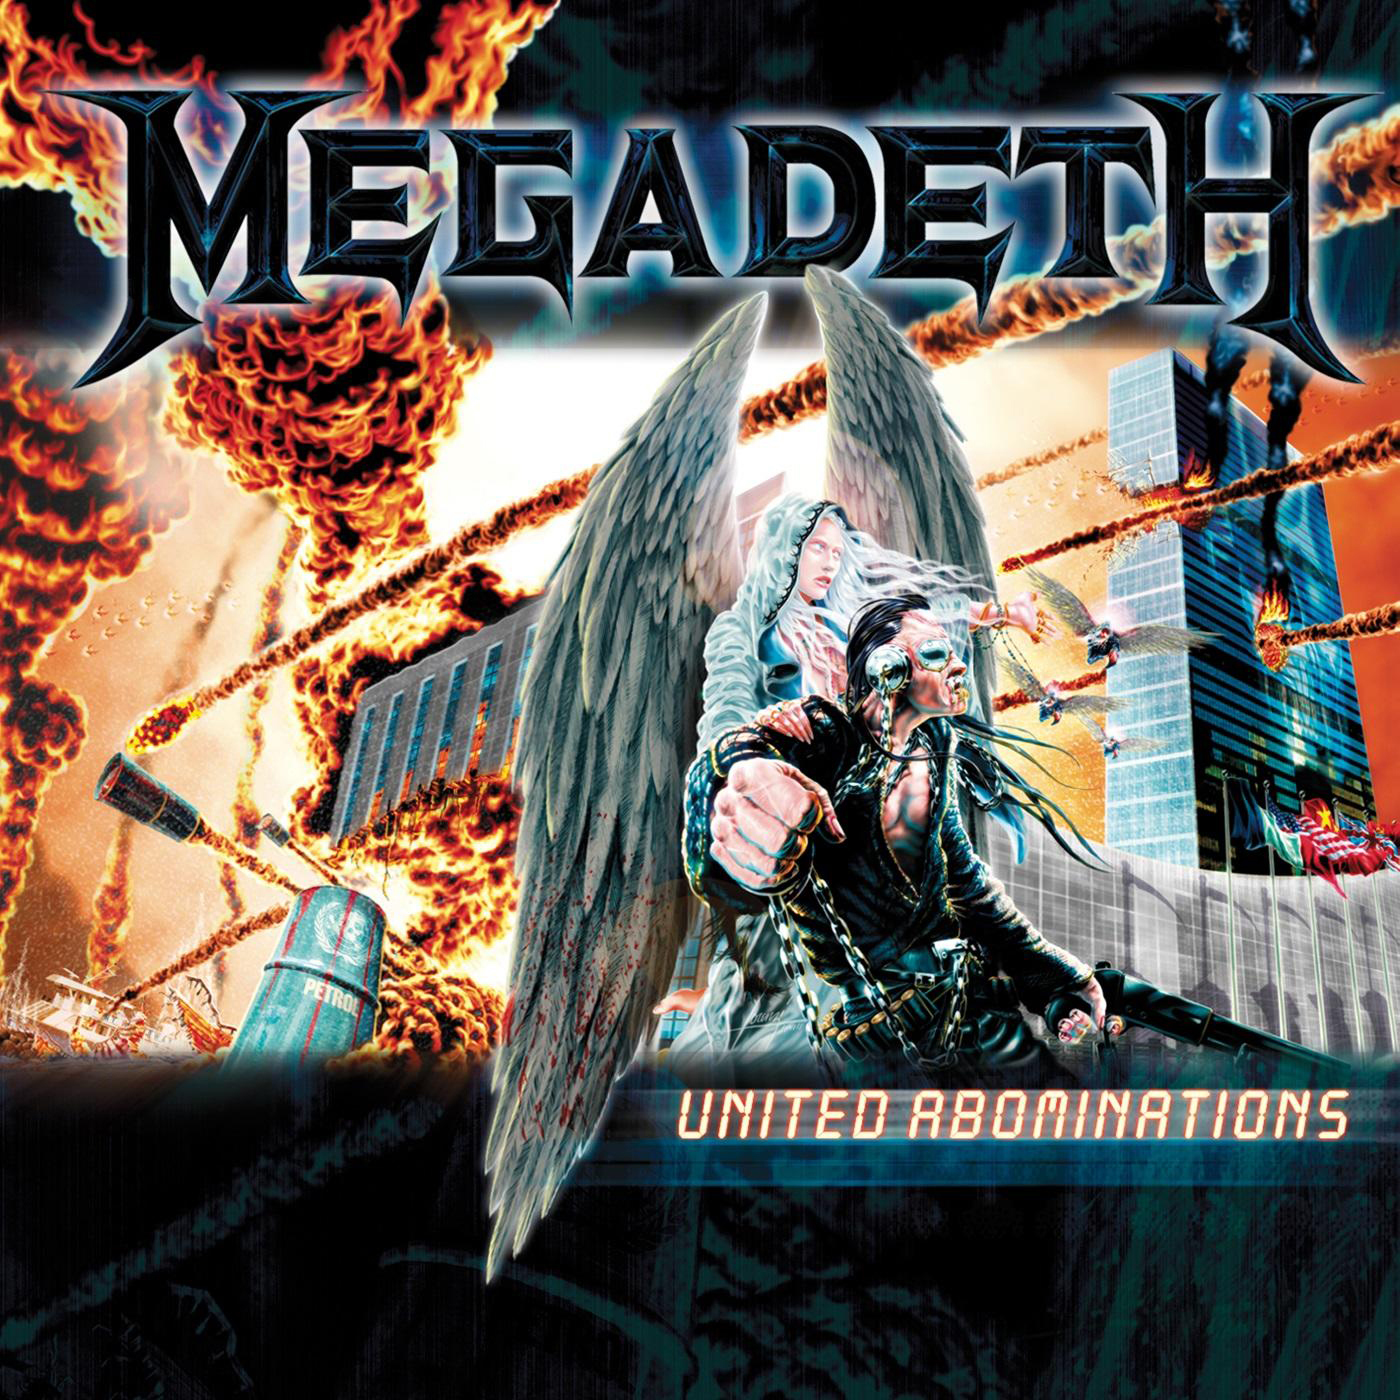 - (Vinyl) United Megadeth Abominations -